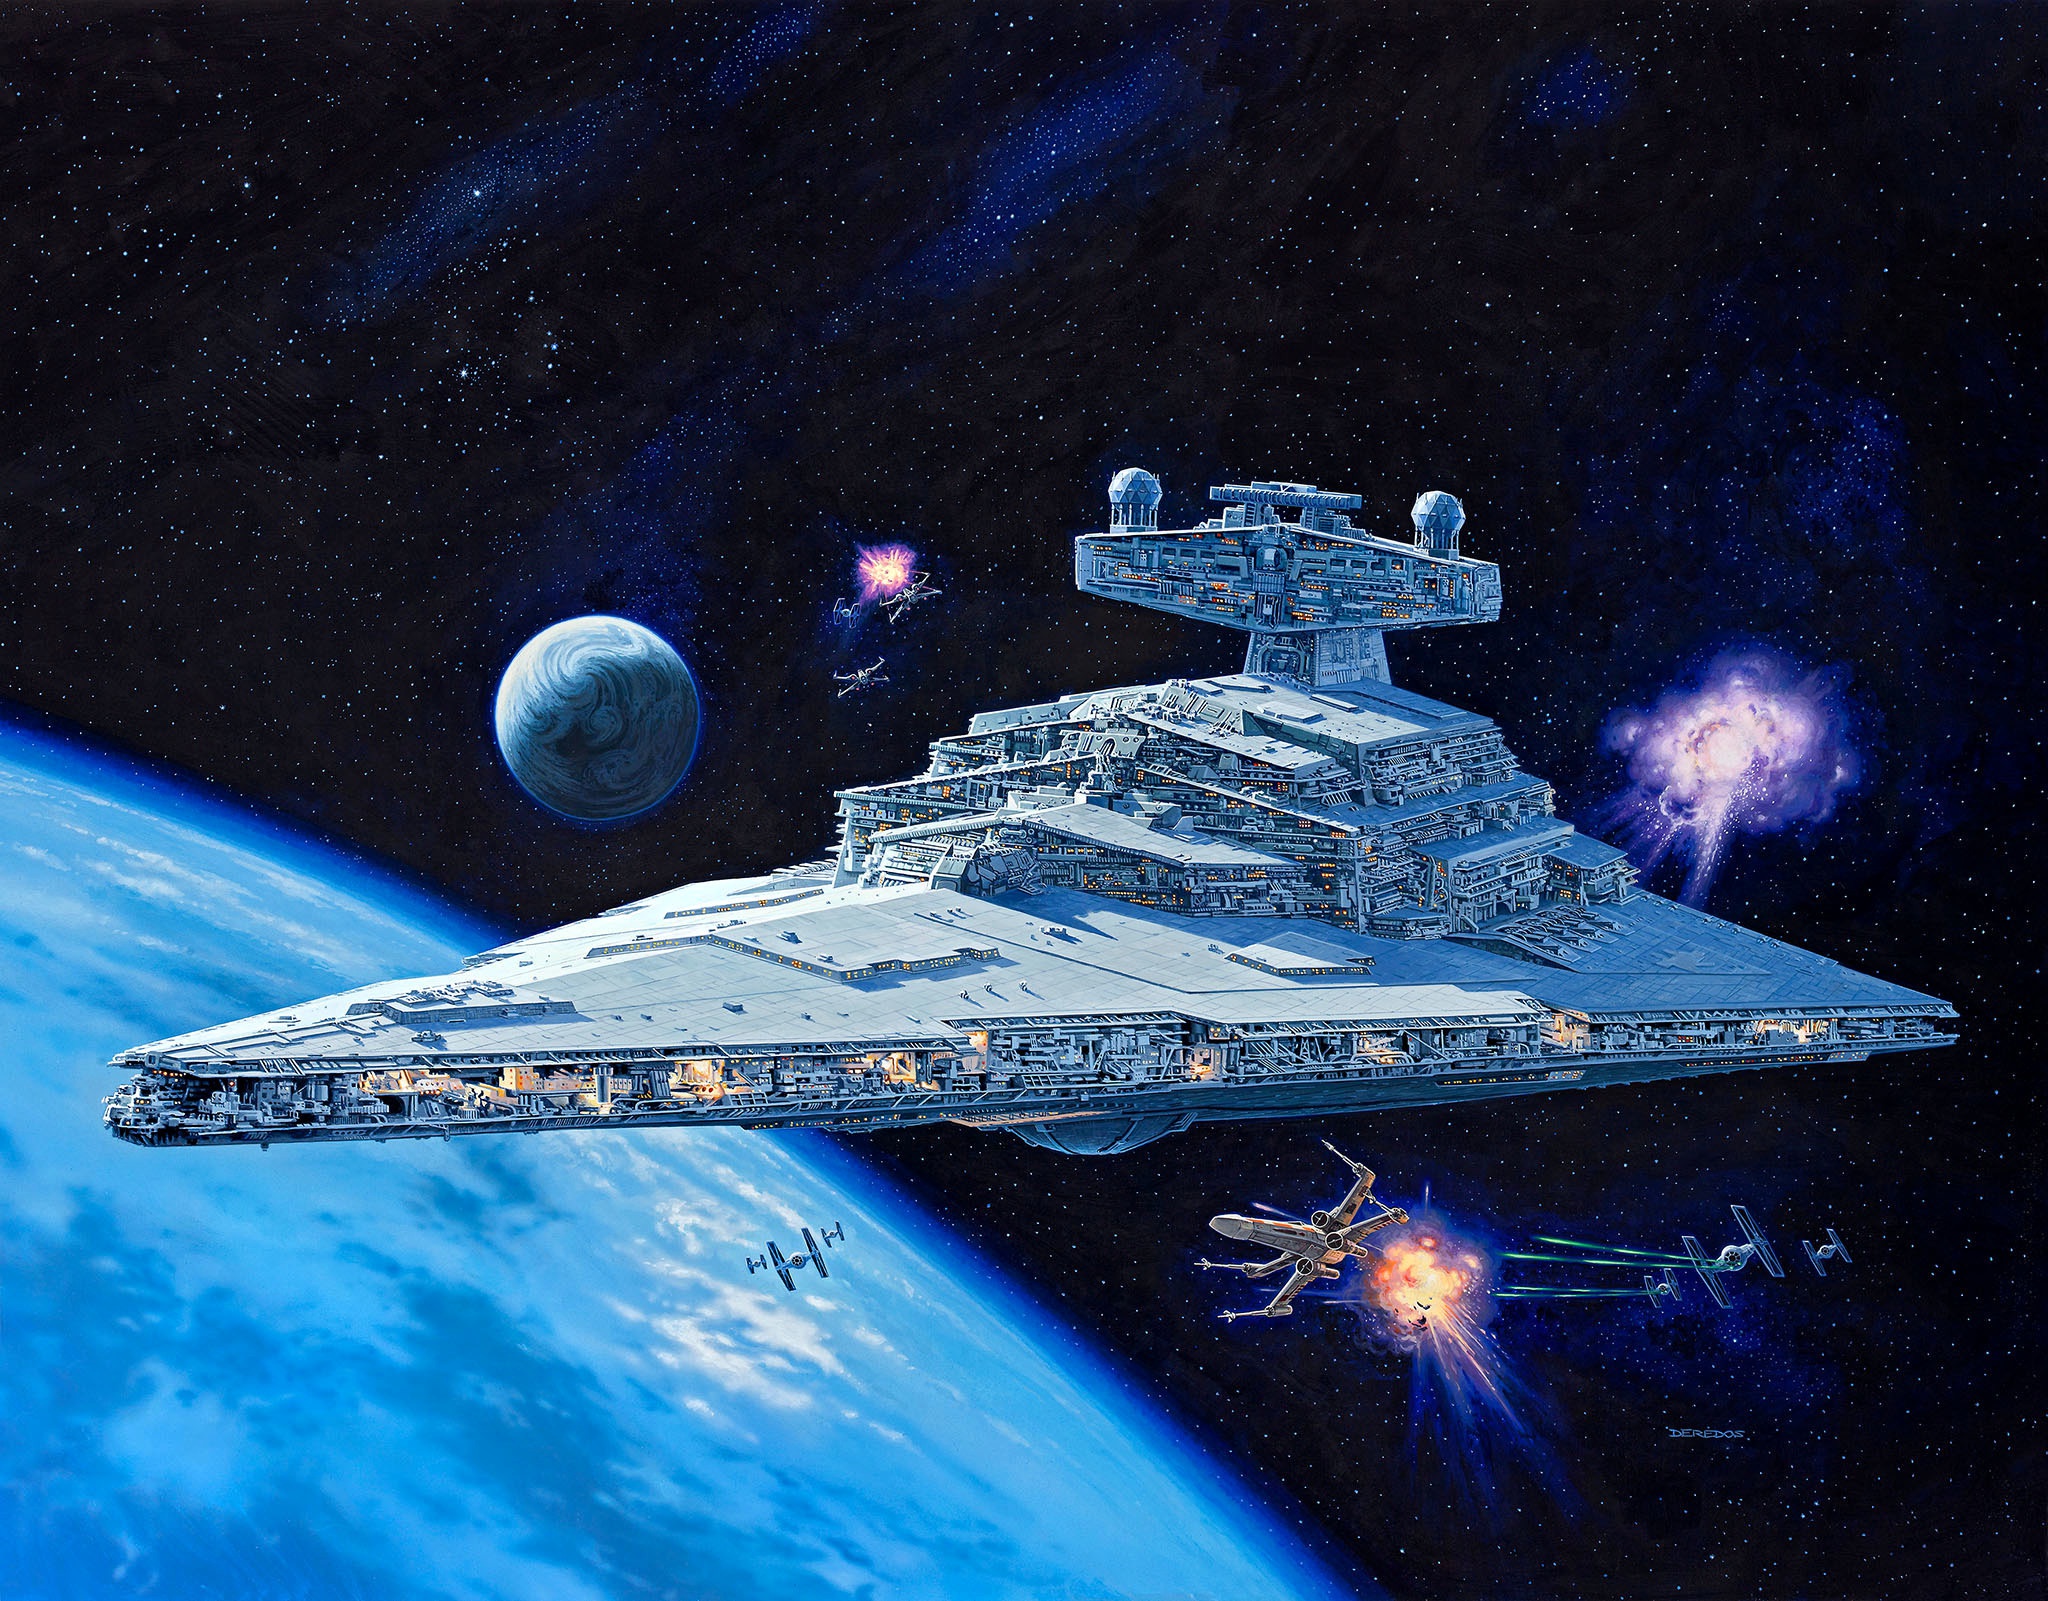 Spaceship Star Destroyer Star Wars Tie Fighter X Wing 2048x1601